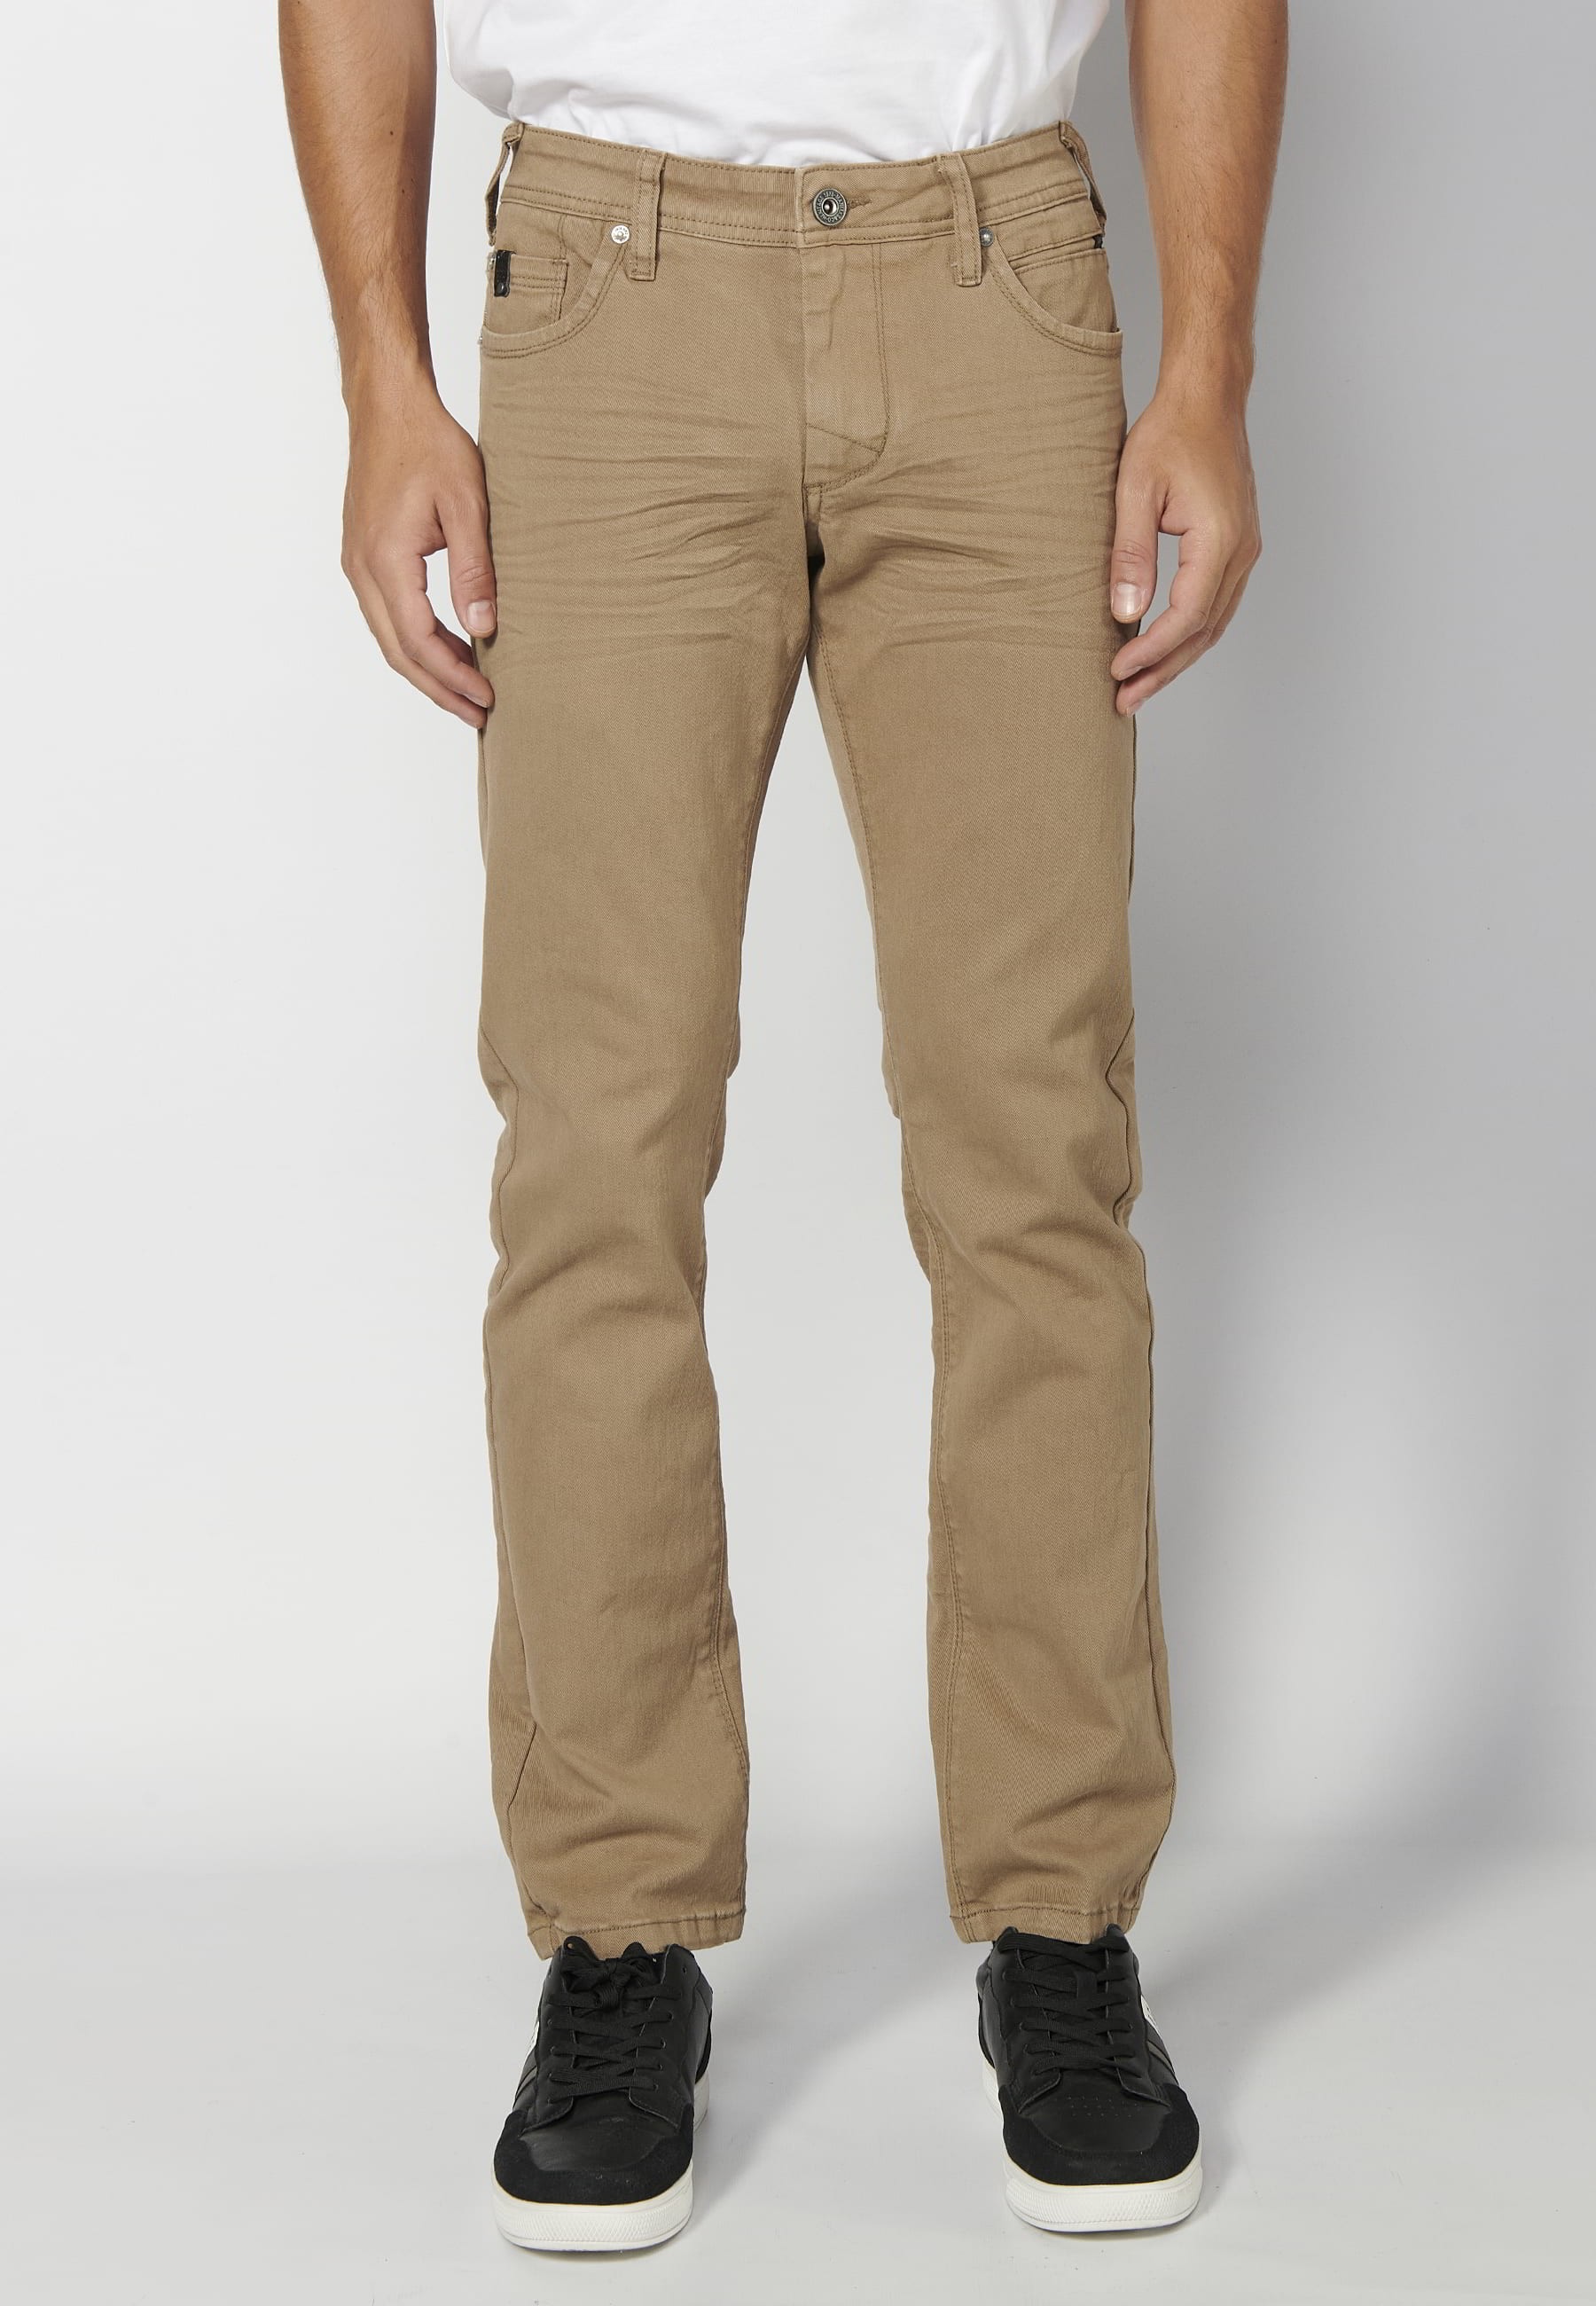 Pantalón largo straigth regular fit, con cinco bolsillos, color Beige, para Hombre 4